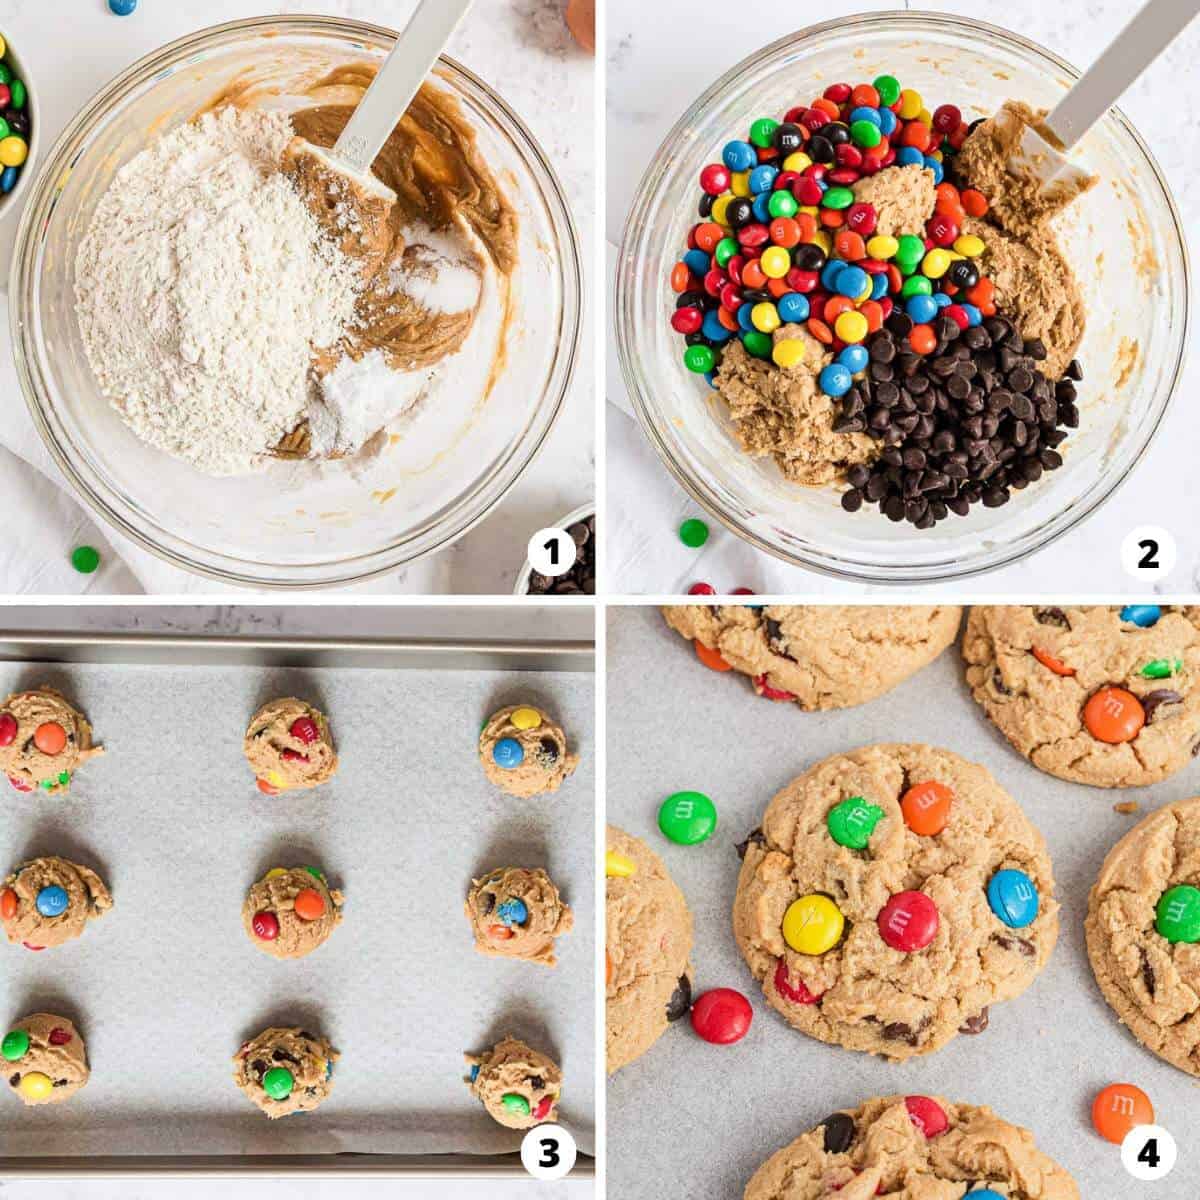 Fıstık ezmeli kurabiyelerin nasıl yapıldığını 4 adımlık bir kolajla gösteriyoruz.